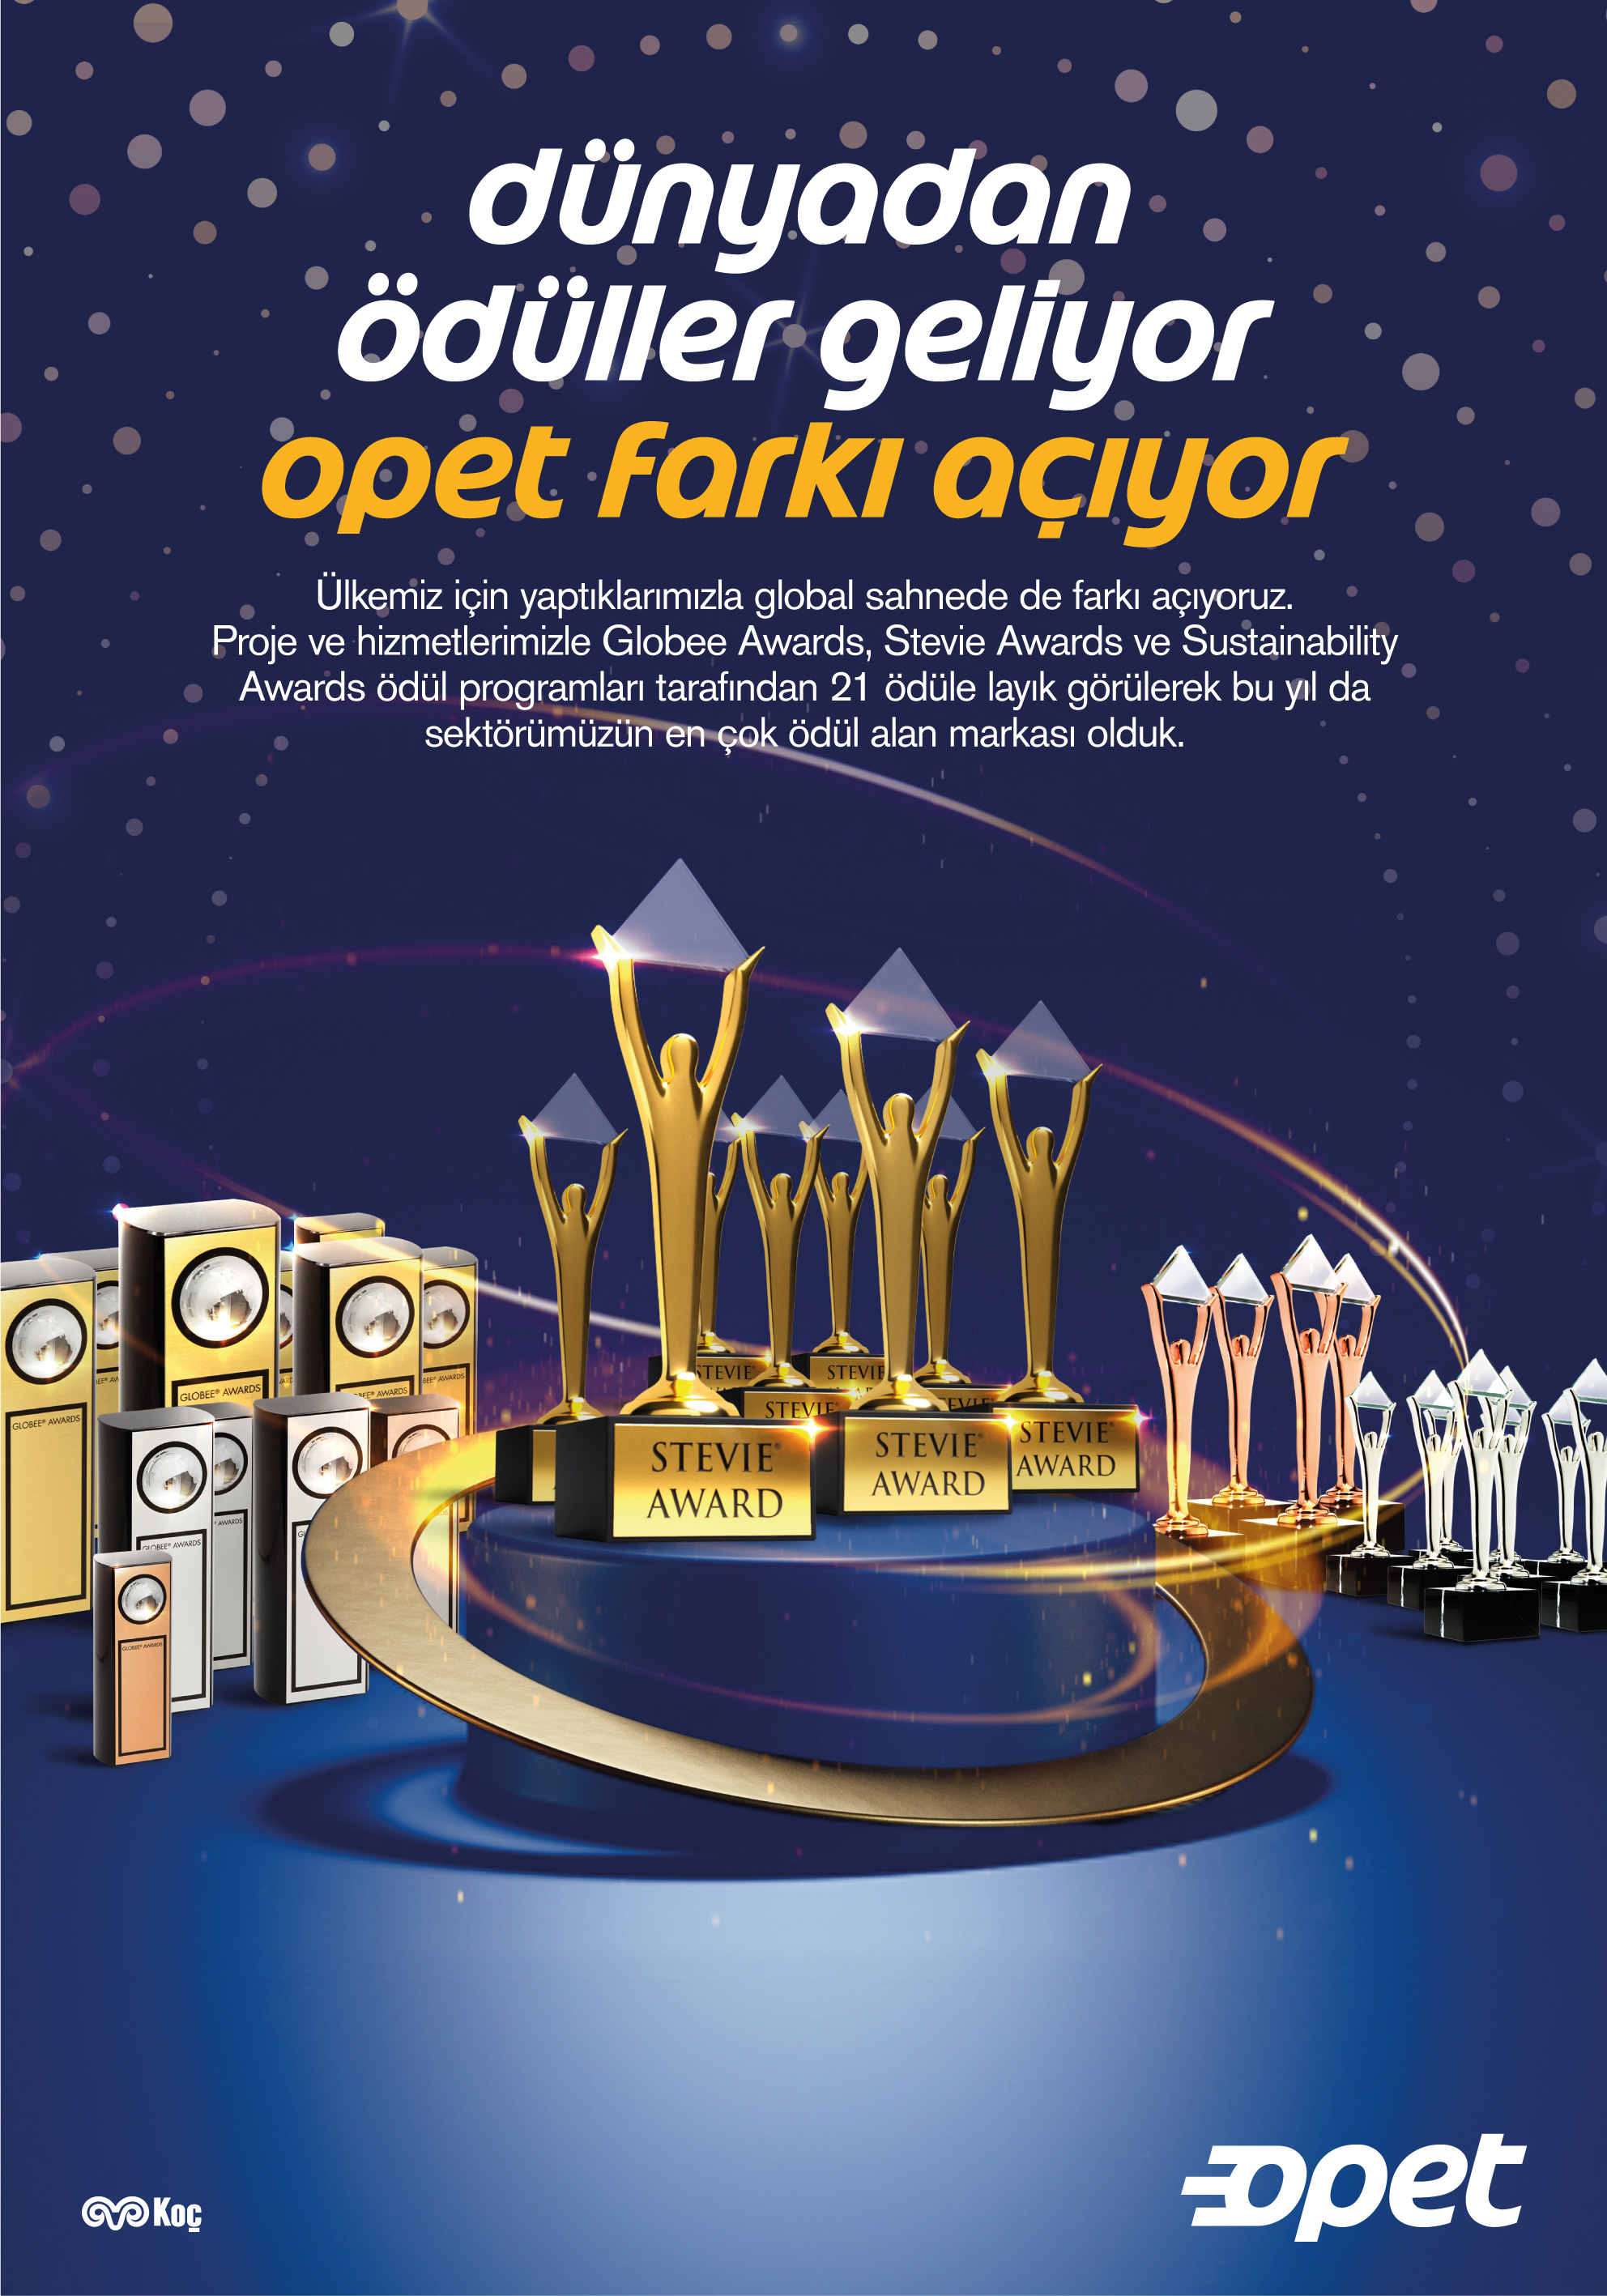 OPET, global ödülleri ile yine “dünyanın en iyileri” arasında